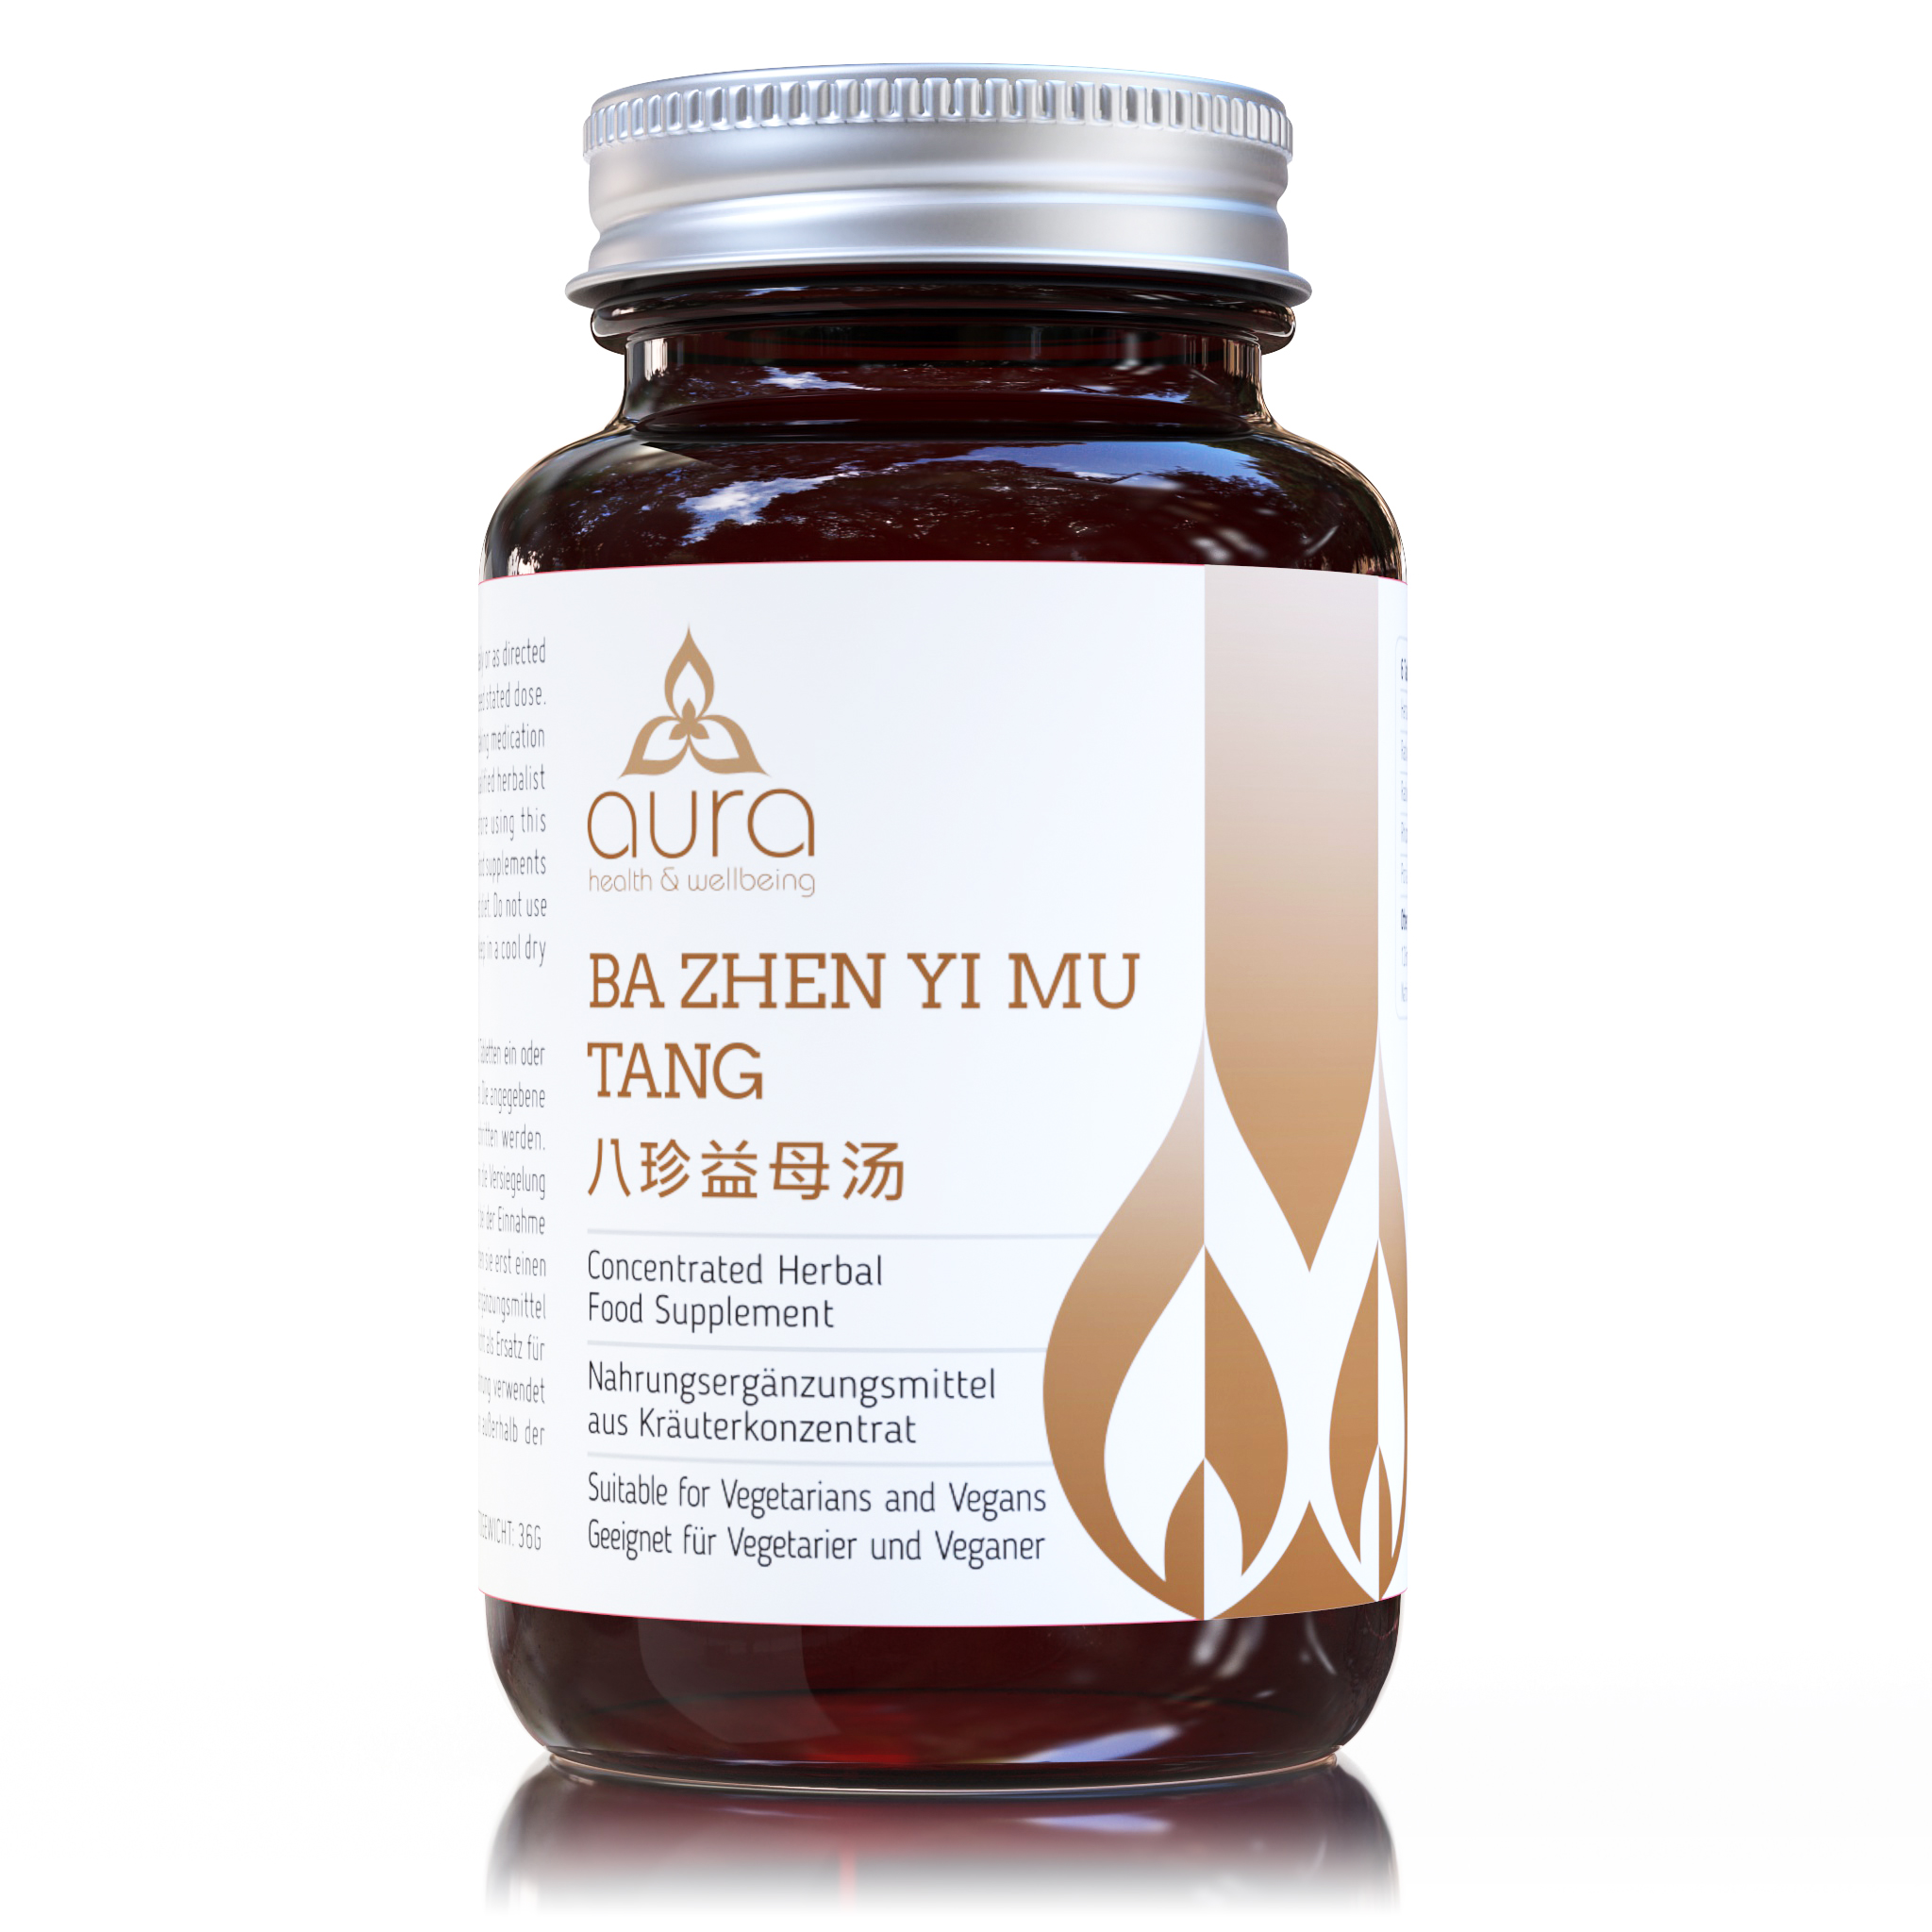 BA ZHEN YI MU TANG (comprimidos)